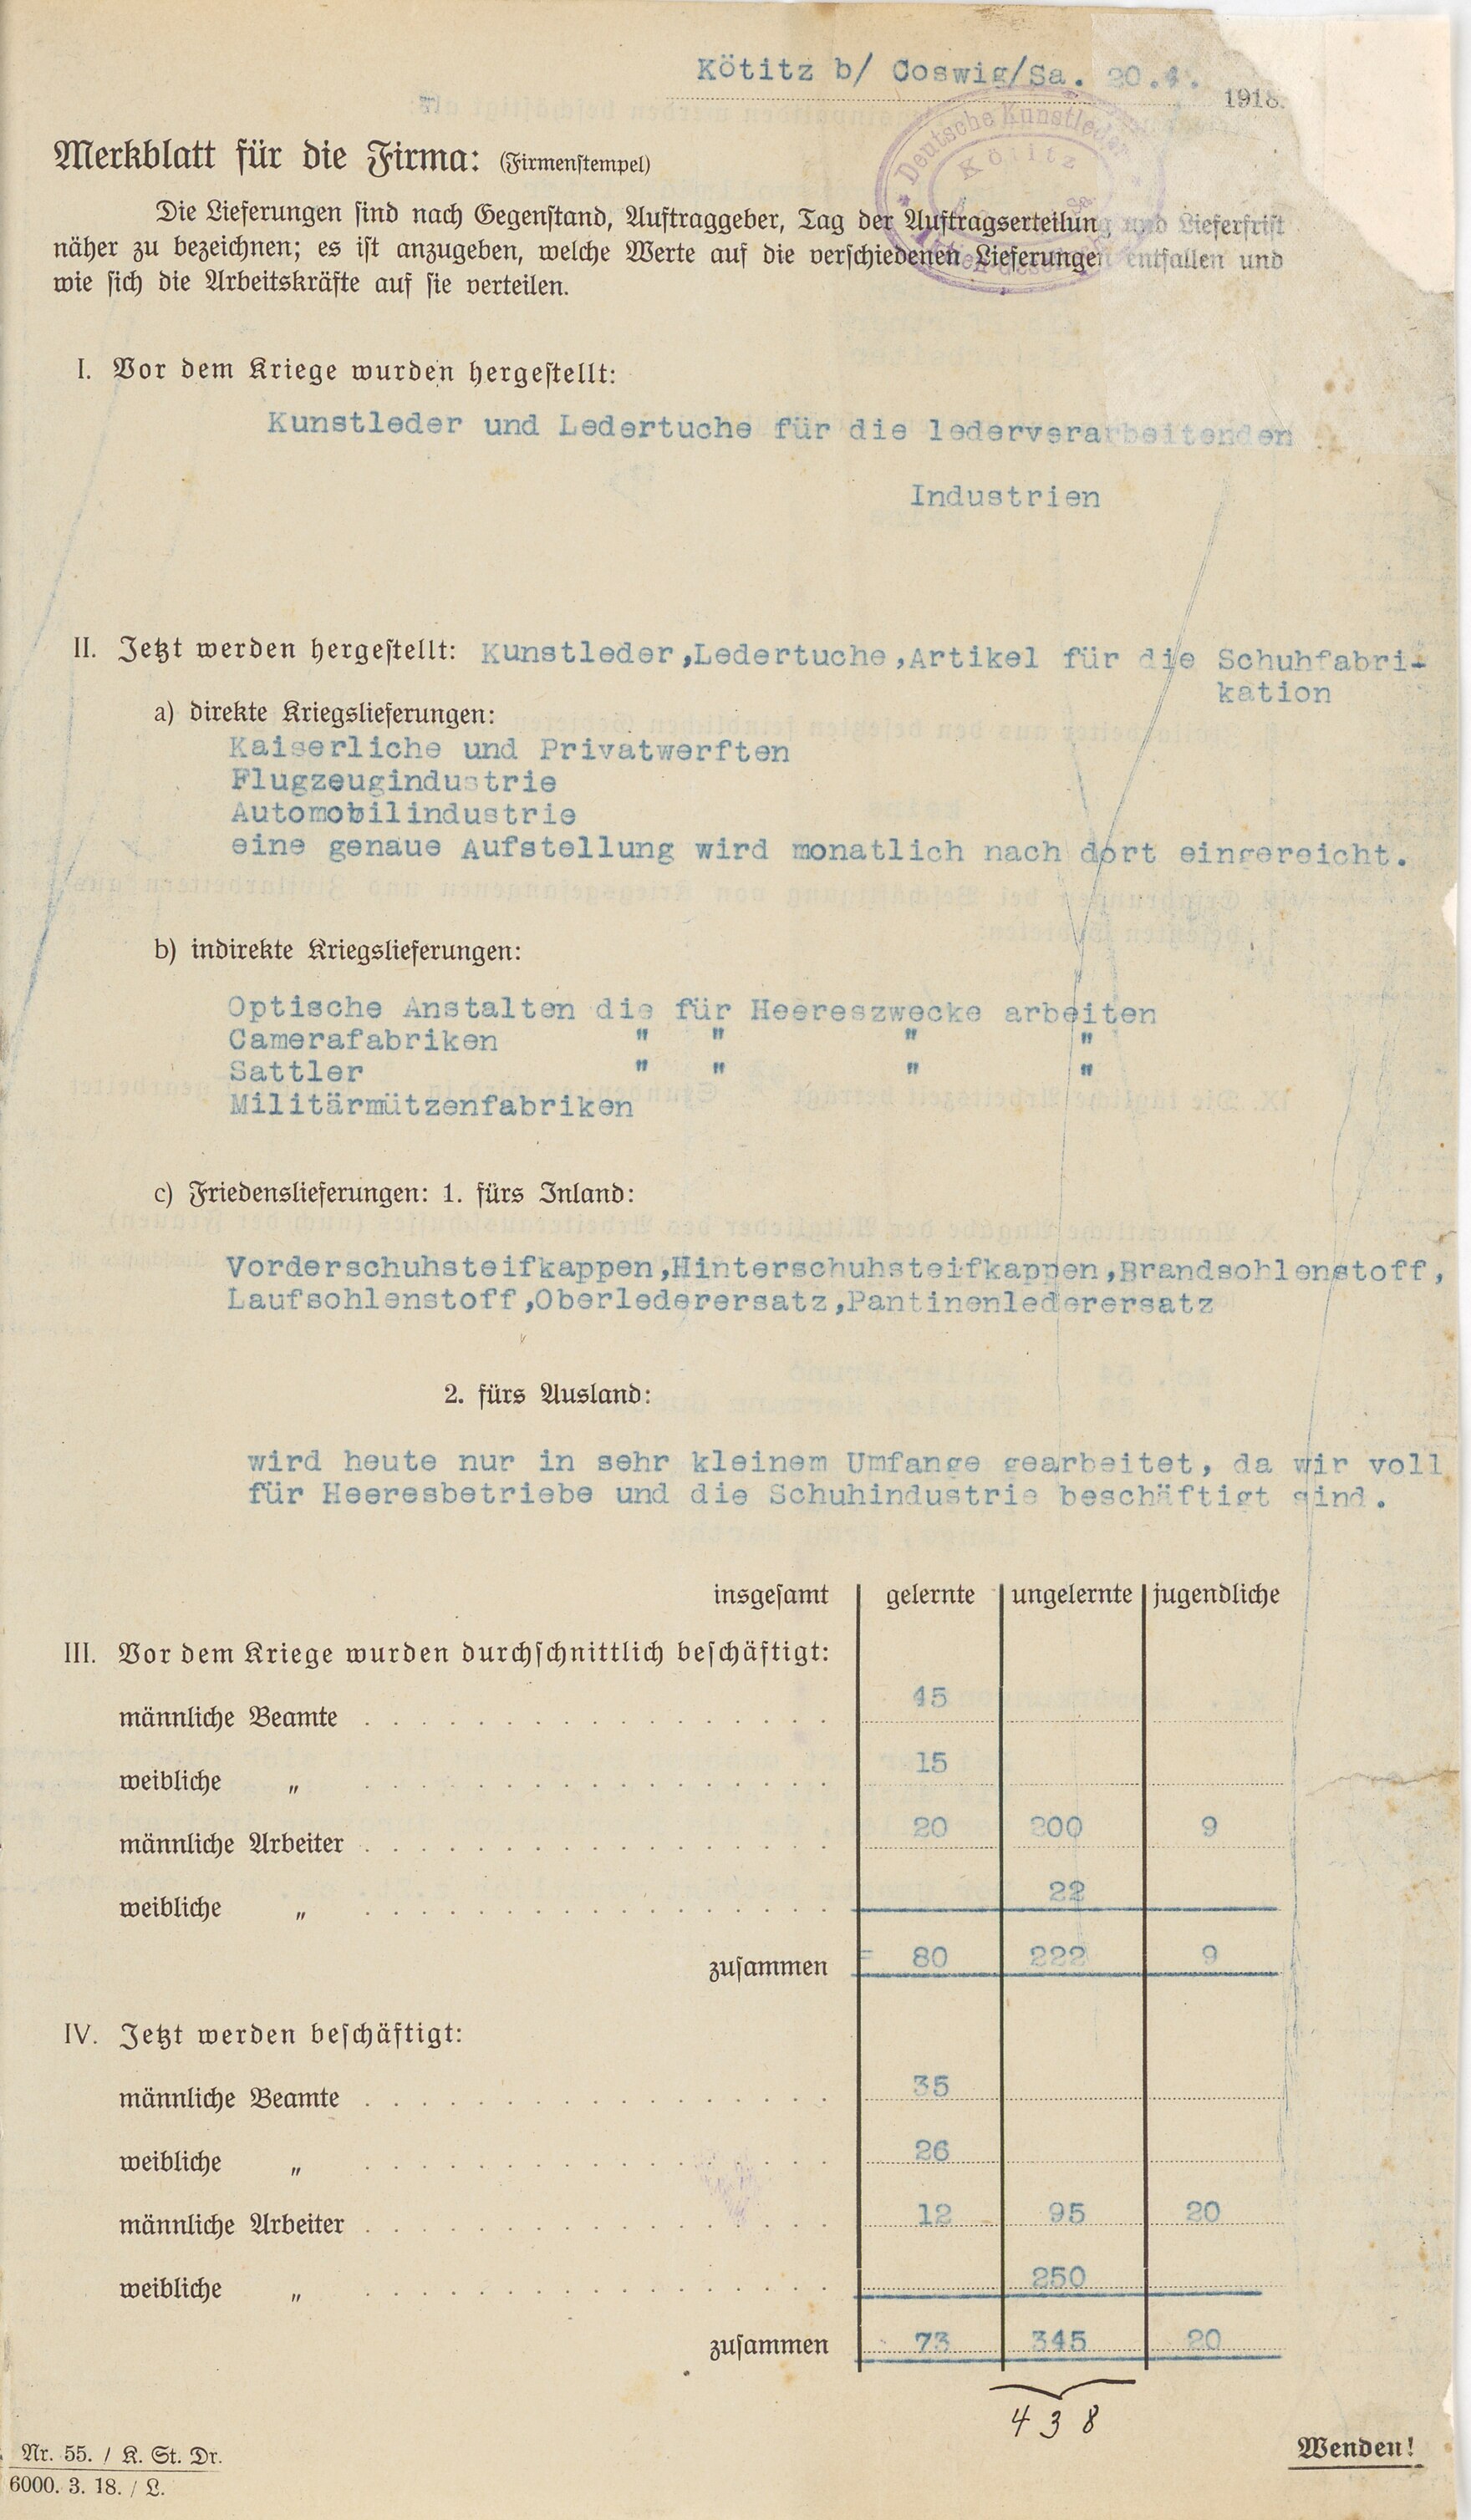 Prüfung von Belegschaftslisten der Firma Deutsche Kunstleder-Aktien-Gesellschaft Kötitz bei Coswig in Sachsen, 1918